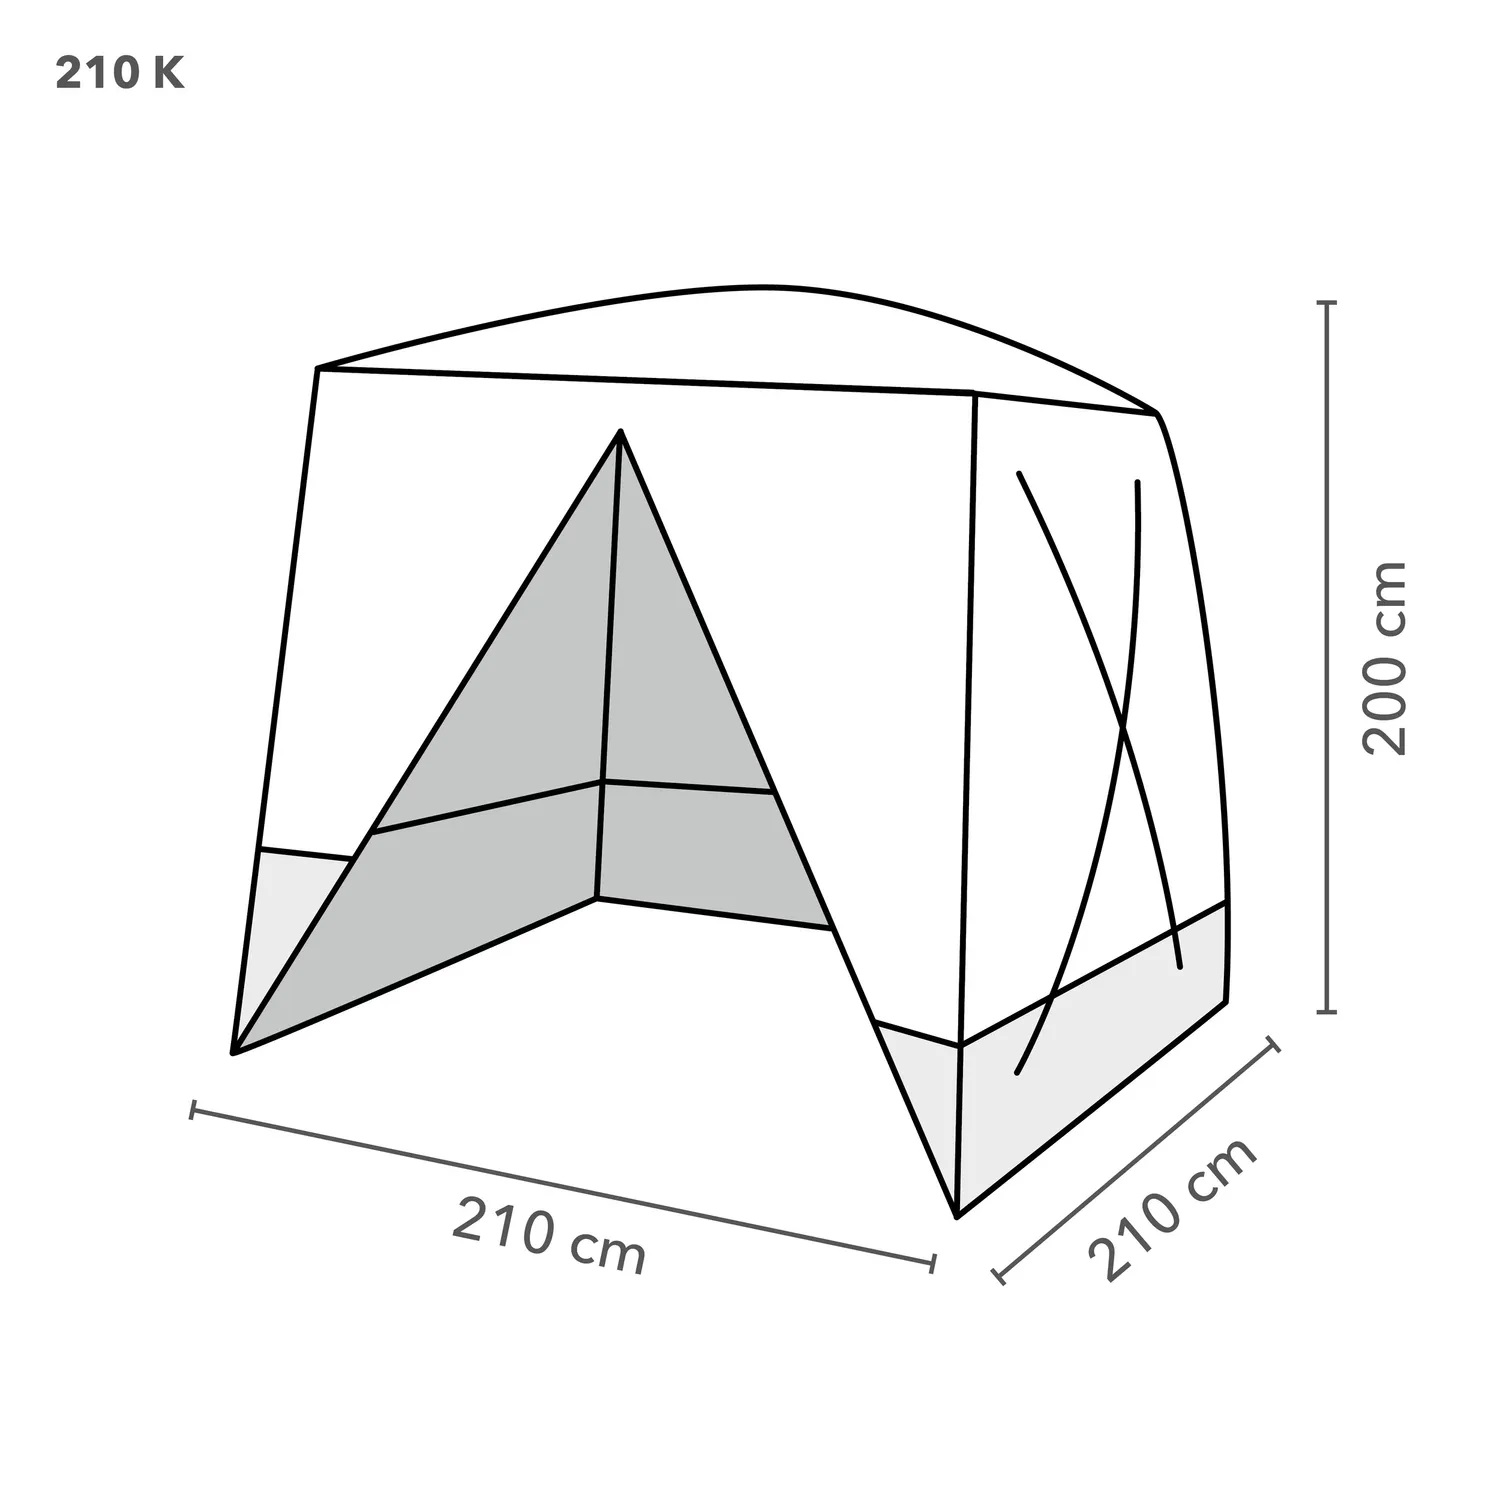 disegno tecnico tenda210k